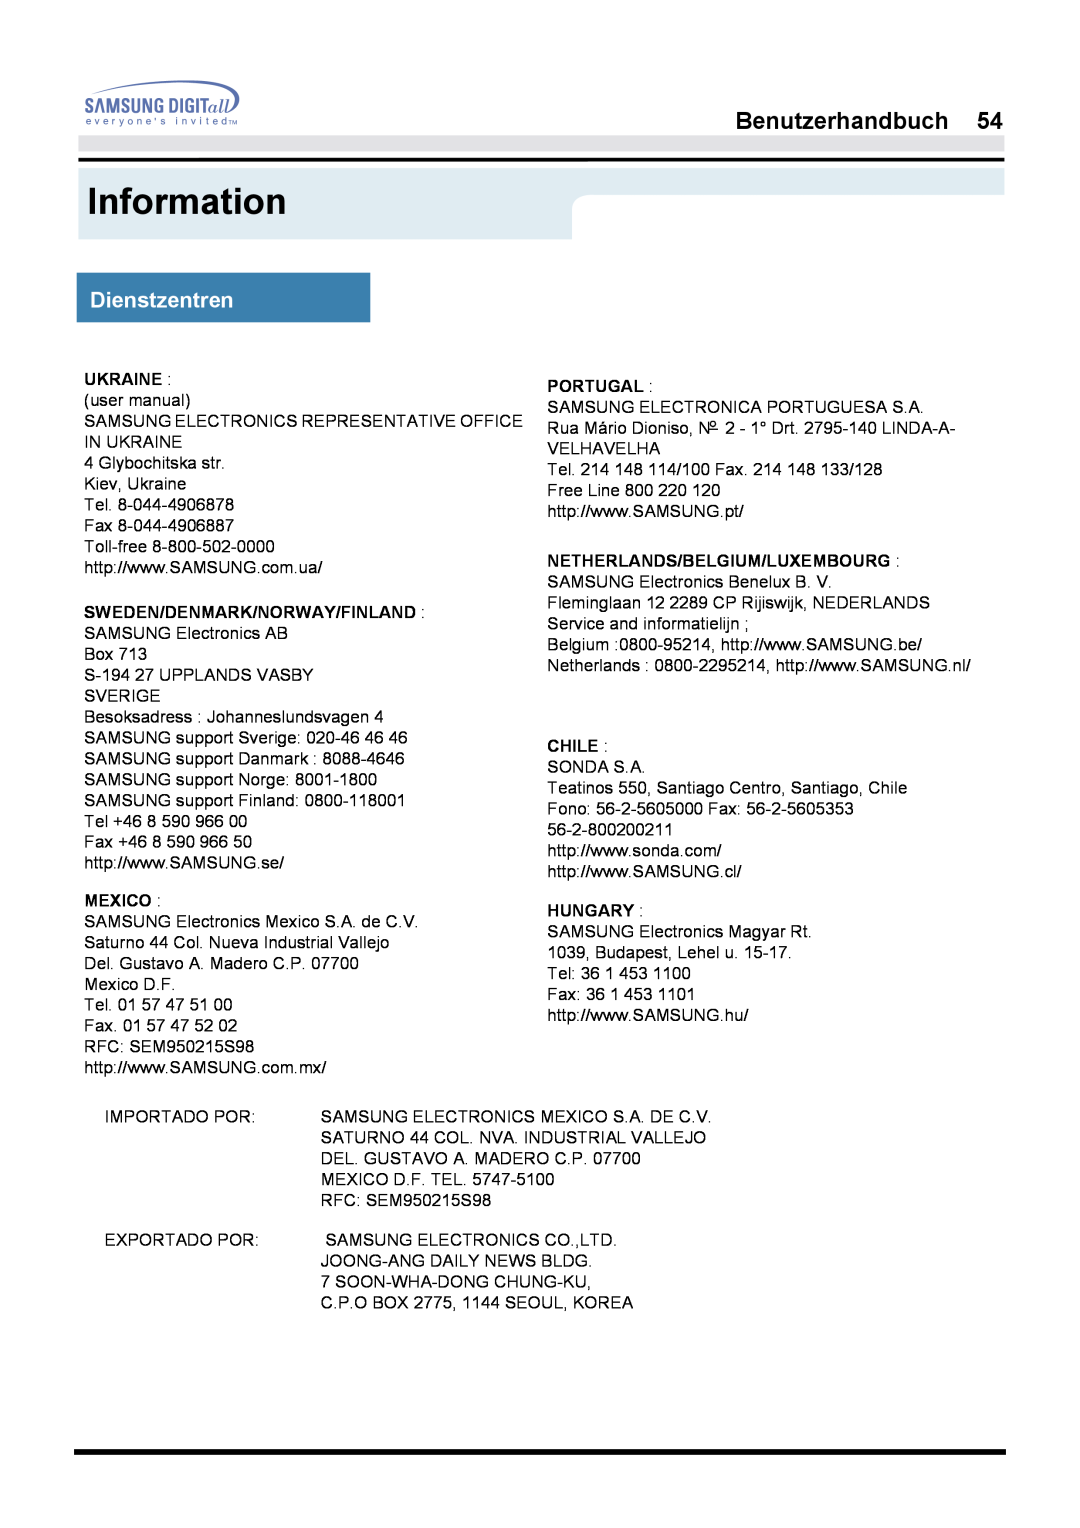 Samsung GH17LSAN/EDC Information, Benutzerhandbuch, Dienstzentren, UKRAINE user manual, Sweden/Denmark/Norway/Finland 